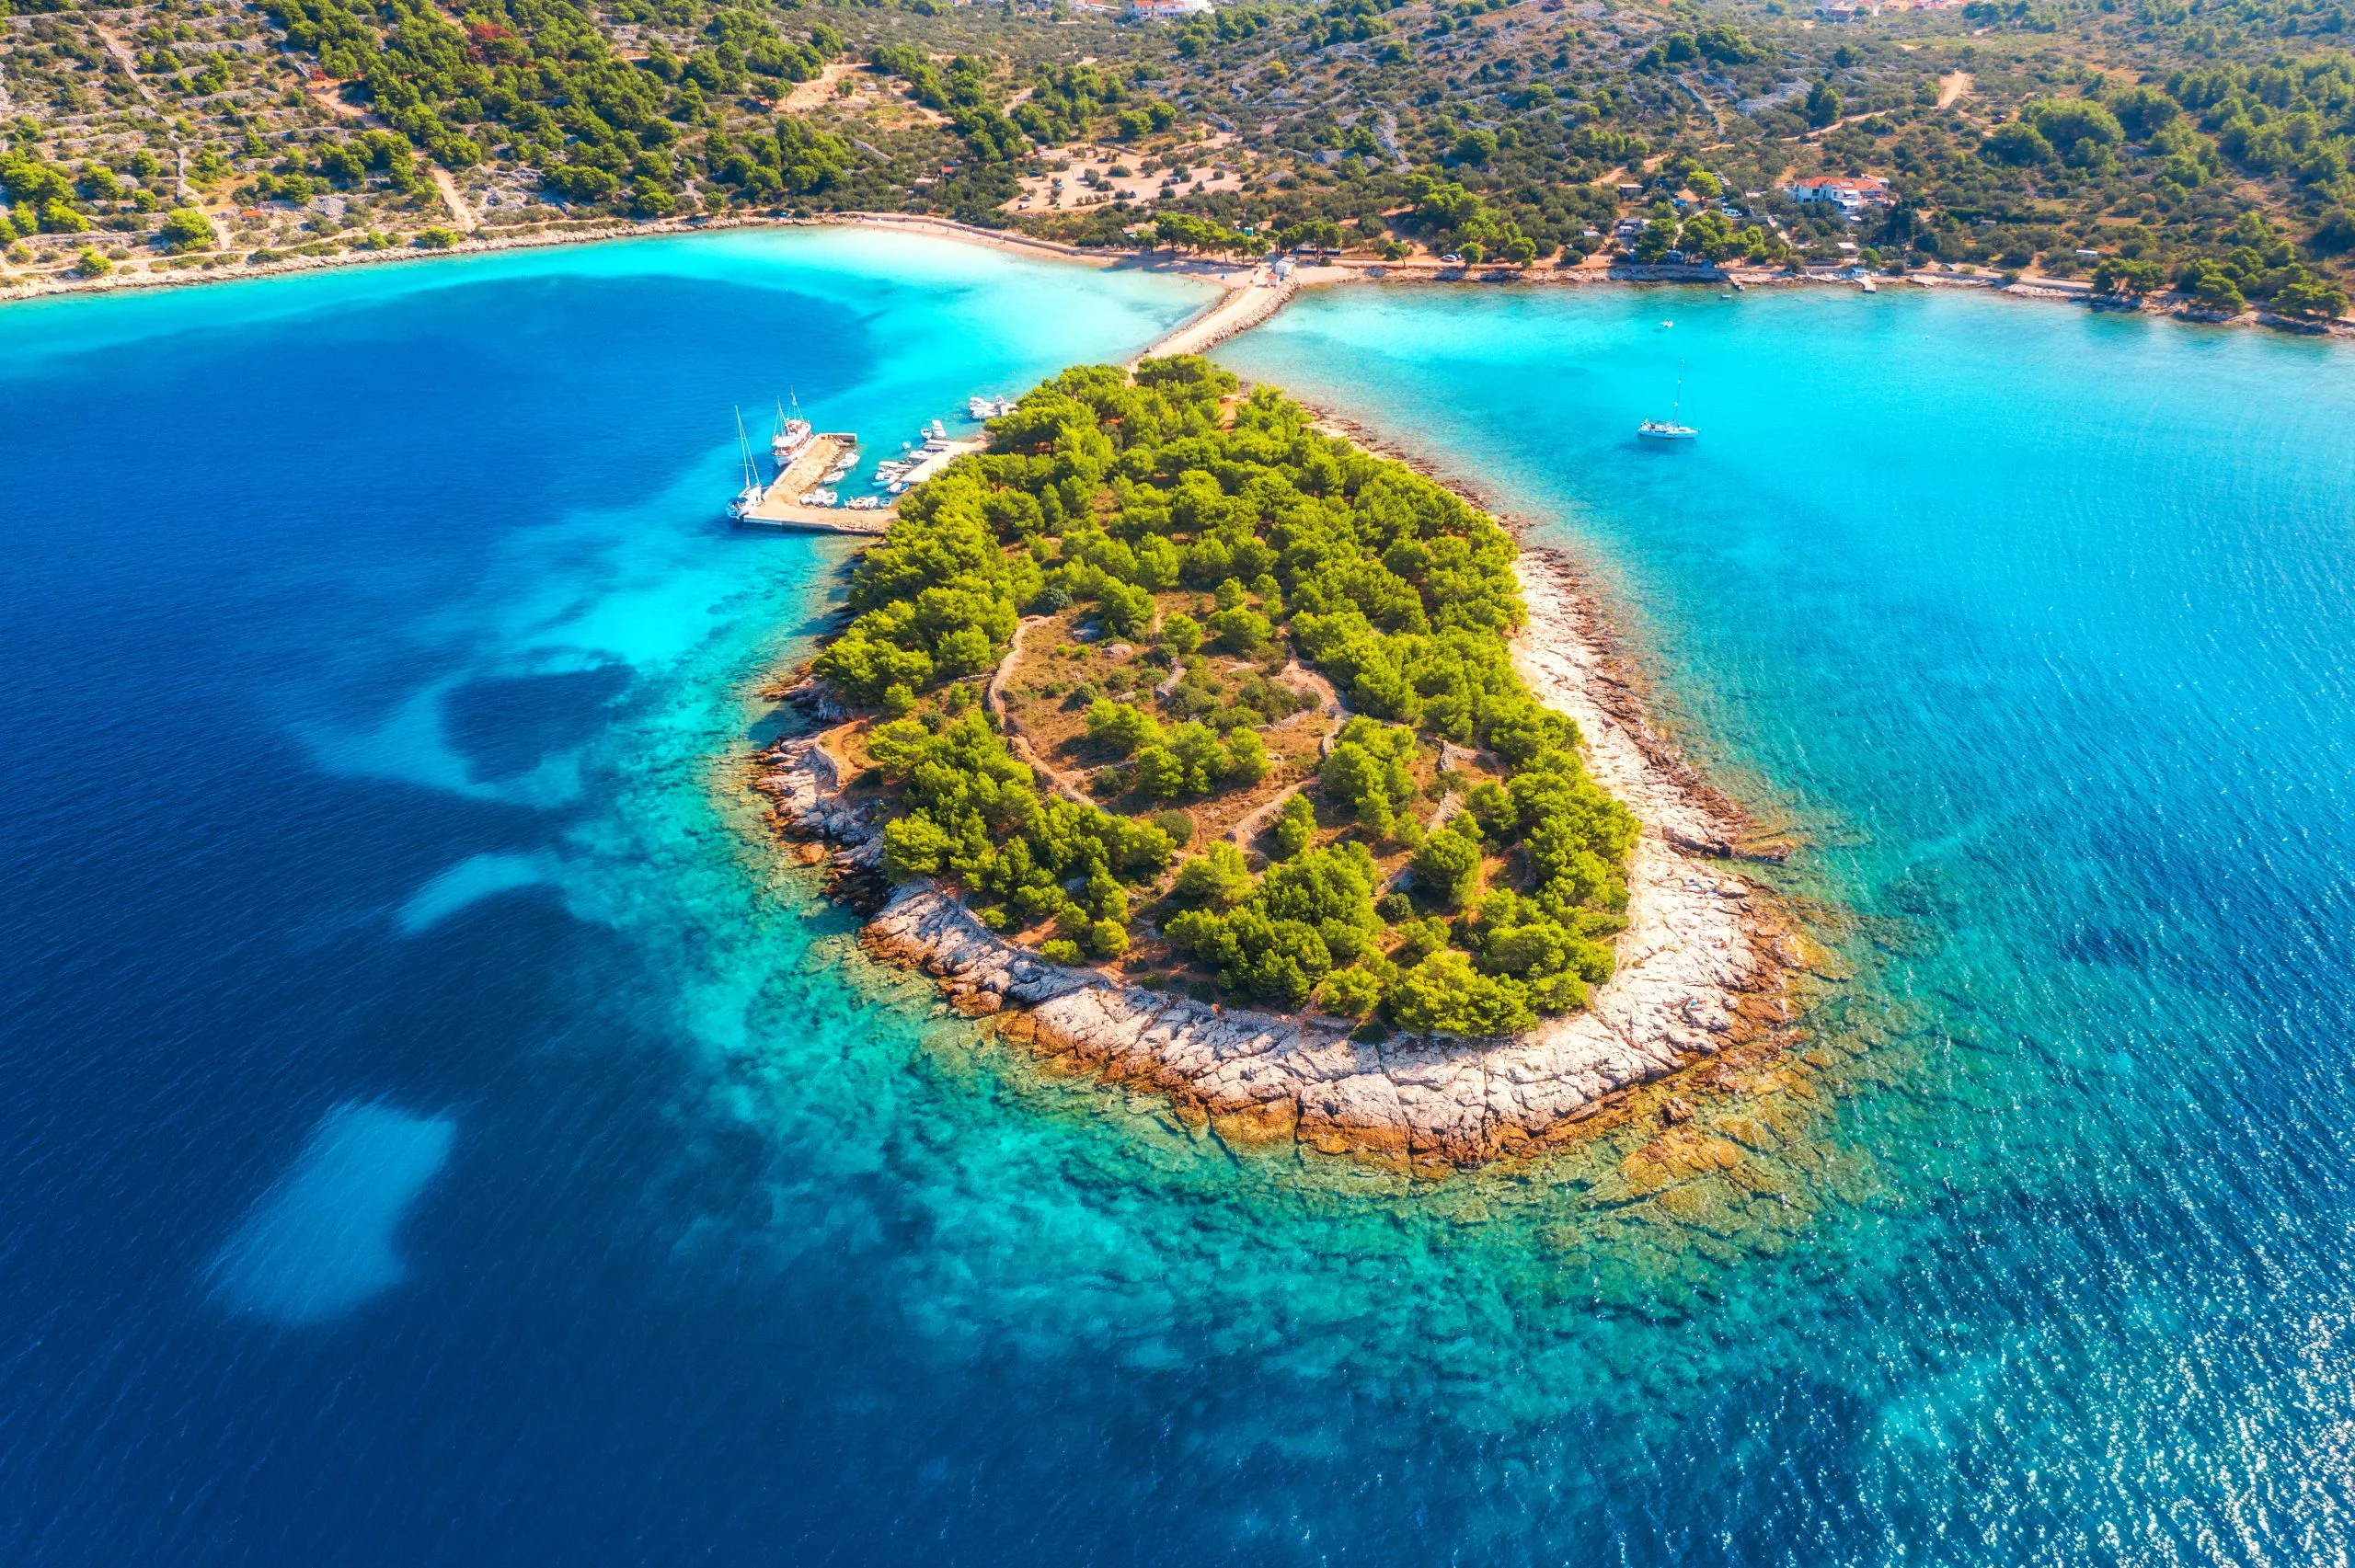 Luchtfoto van mooi klein eiland in zeebaai op zonnige dag in de zomer in Murter, Kroatië. Bovenaanzicht van transparant blauw water, groene bomen, berg, zandstrand, boten en jachten. Tropisch landschap